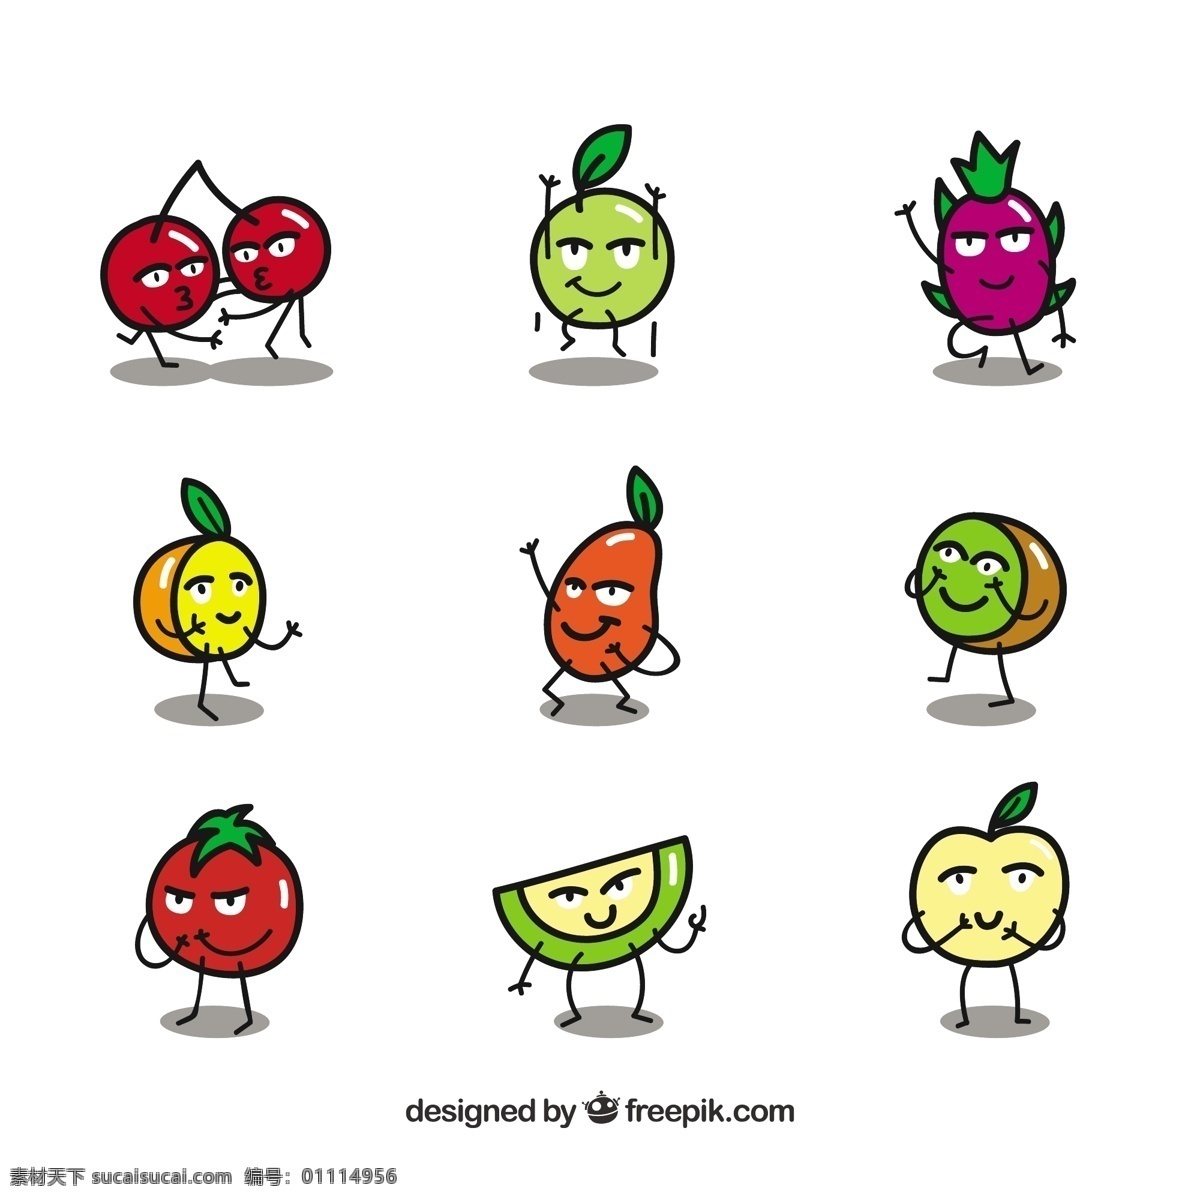 平面设计 表达 水果 特 征集 食品 夏季 色彩 快乐 热带 平坦 自然 健康 平坦的设计 有趣 柠檬 健康食品 营养 樱桃 字符 石灰